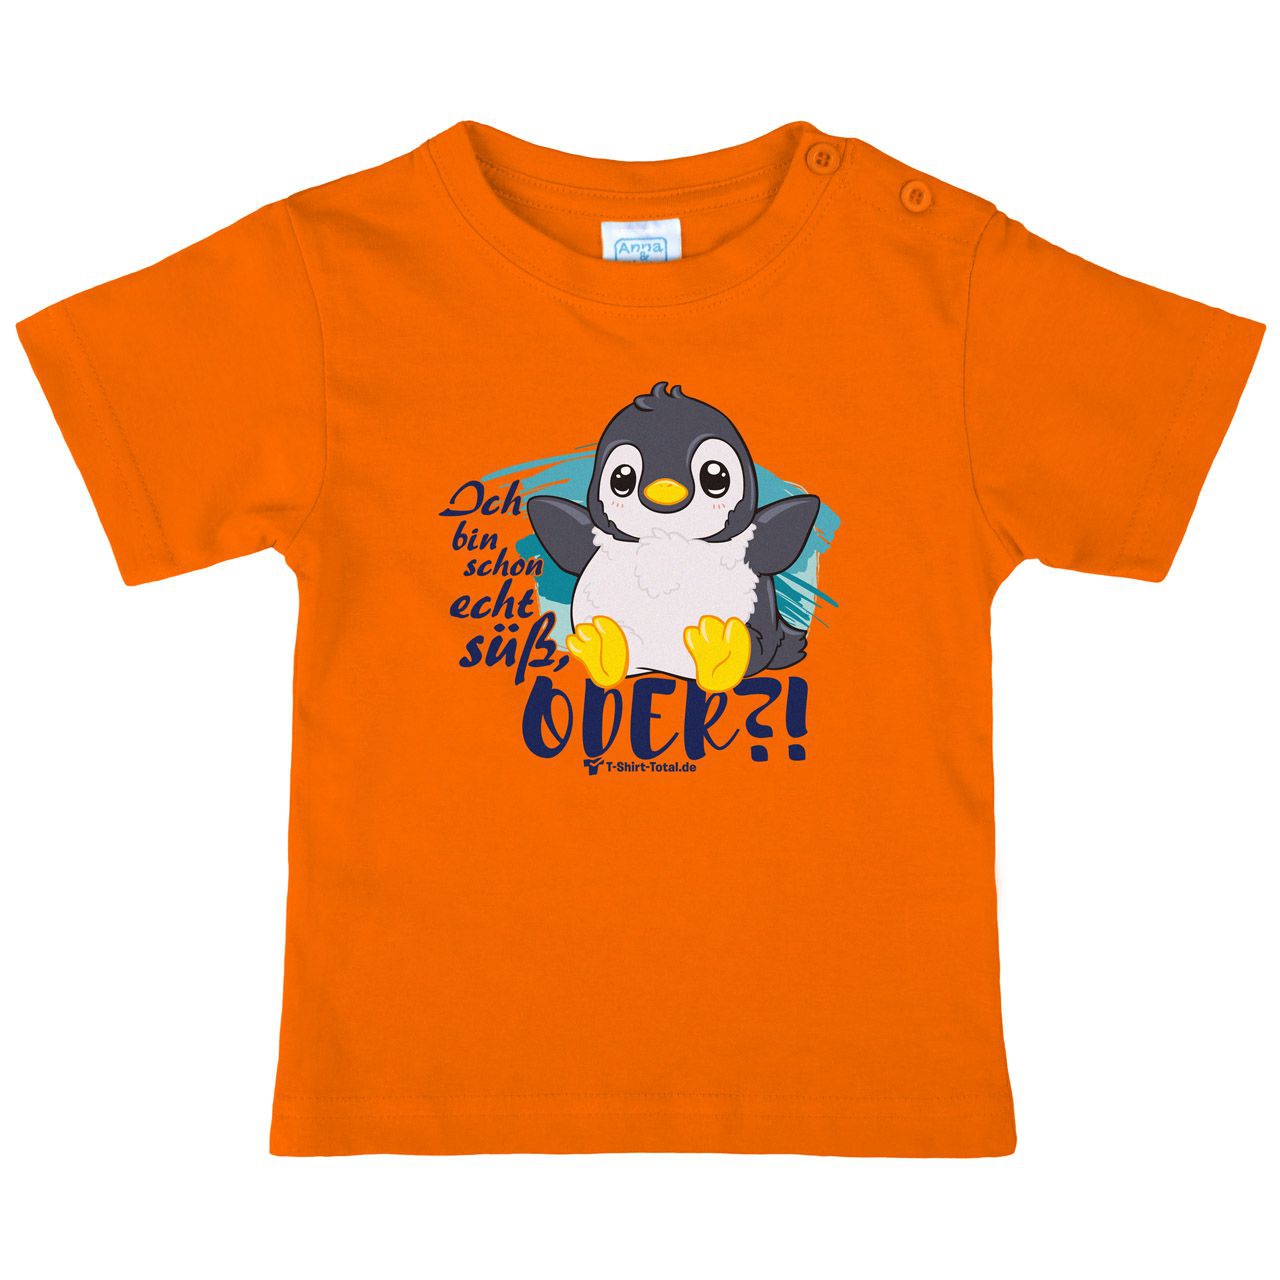 Bin schon echt süß Kinder T-Shirt orange 68 / 74